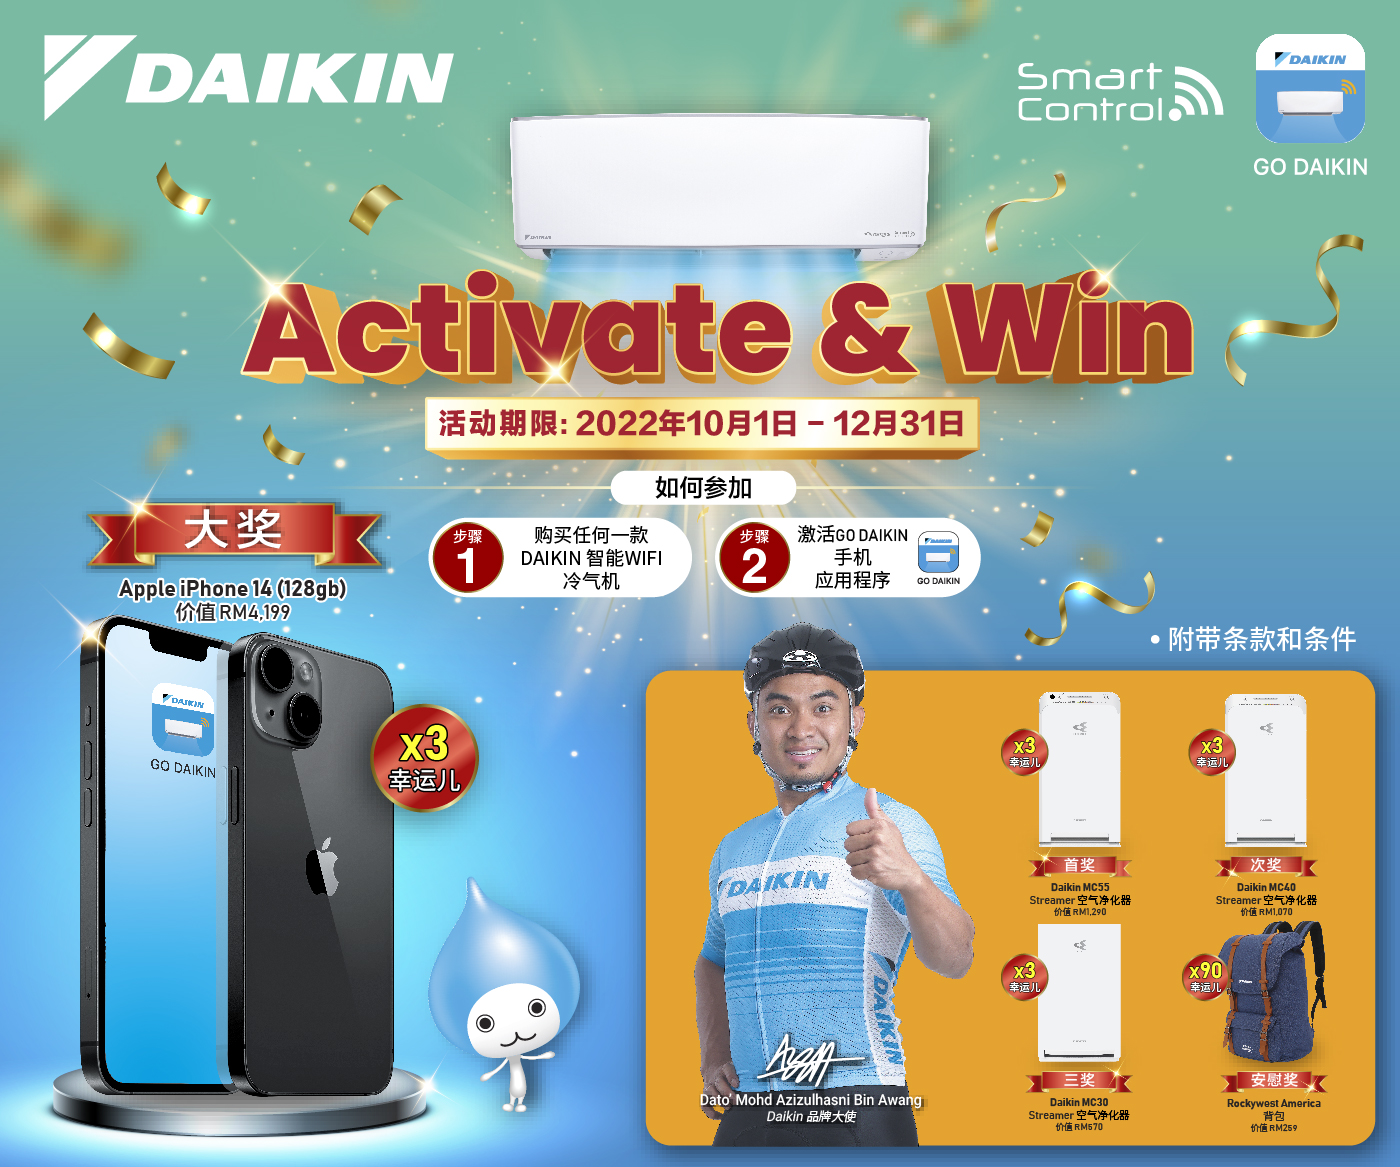 Go Daikin Activate & Win 2022 – CN | Daikin Malaysia